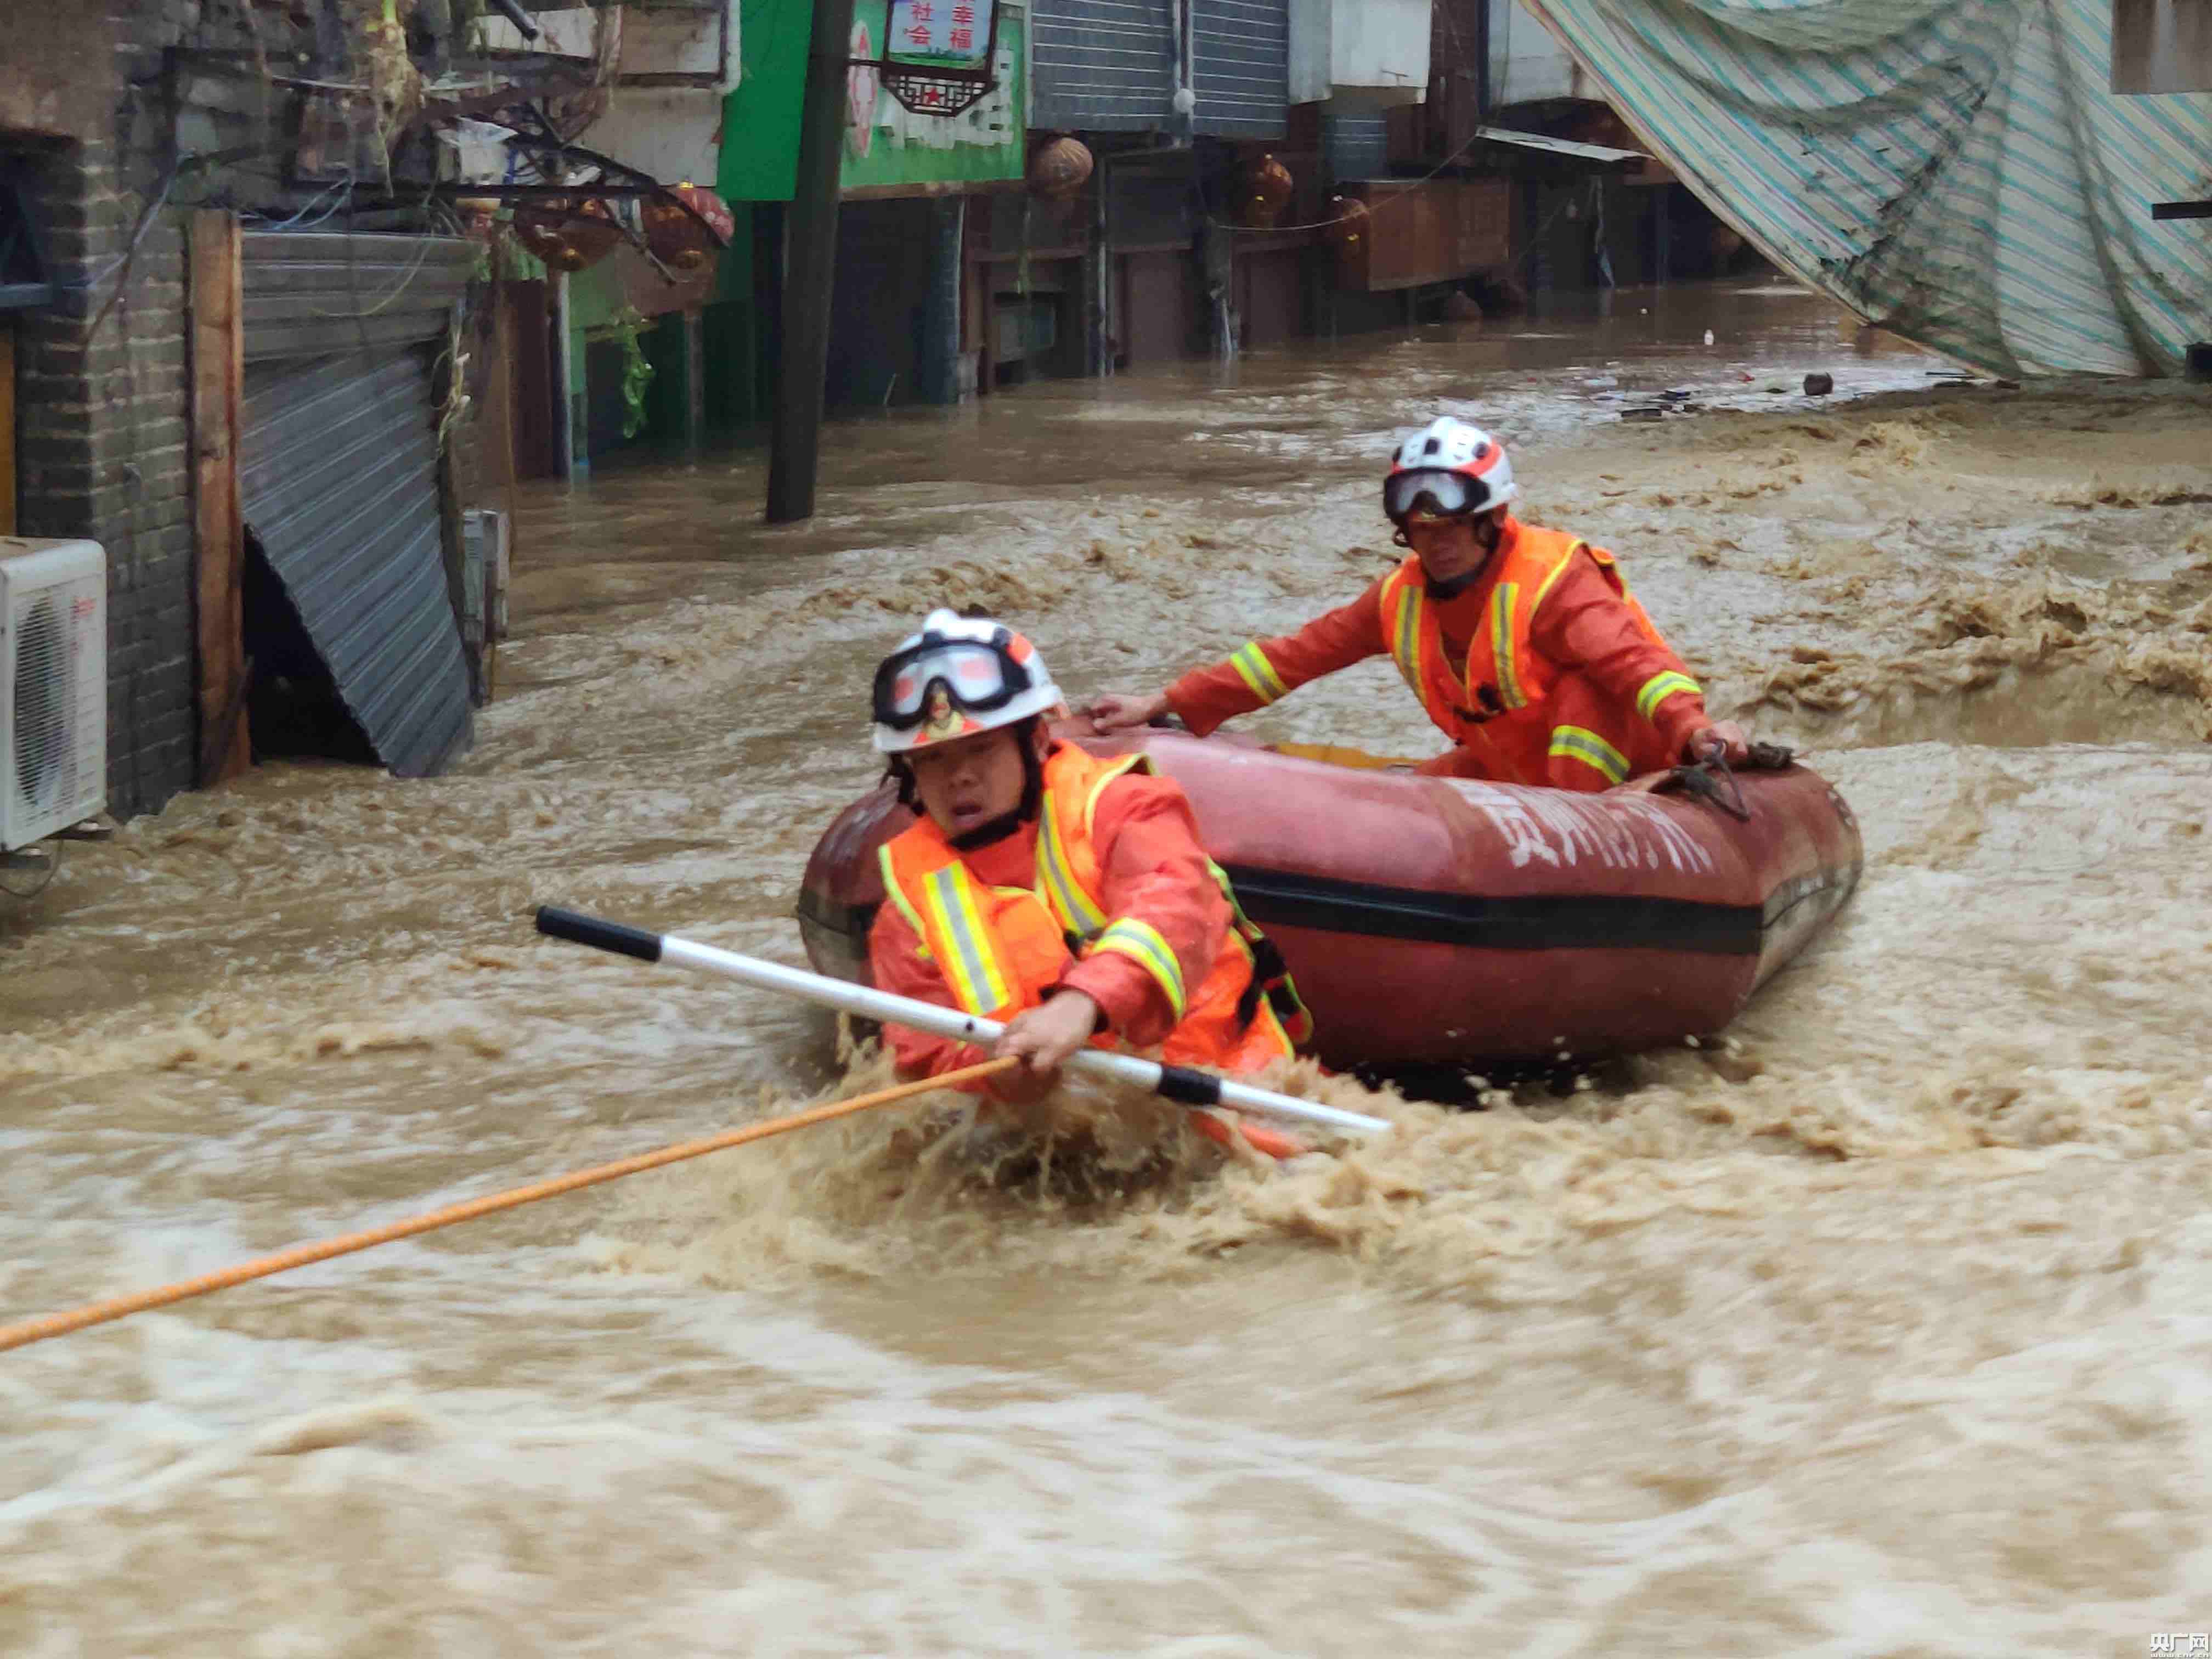 贵州遵义遭遇强降雨 消防启动抗洪抢险应急预案救助群众